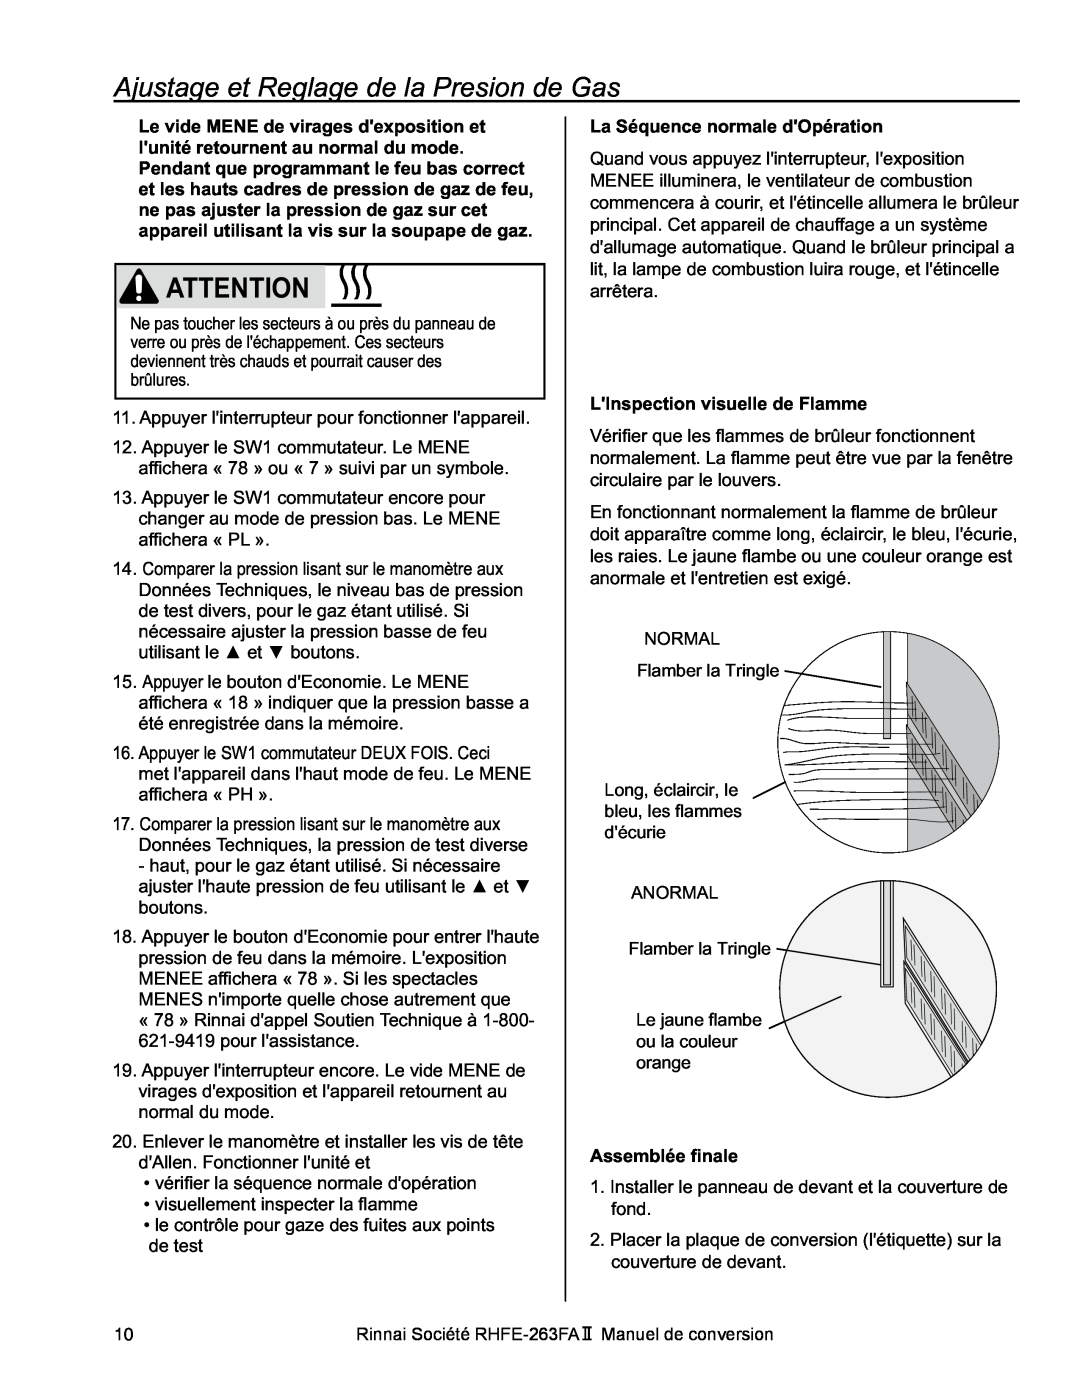 Rinnai RHFE-263FA II manual Ajustage et Reglage de la Presion de Gas, La Séquence normale dOpération, Assemblée finale 